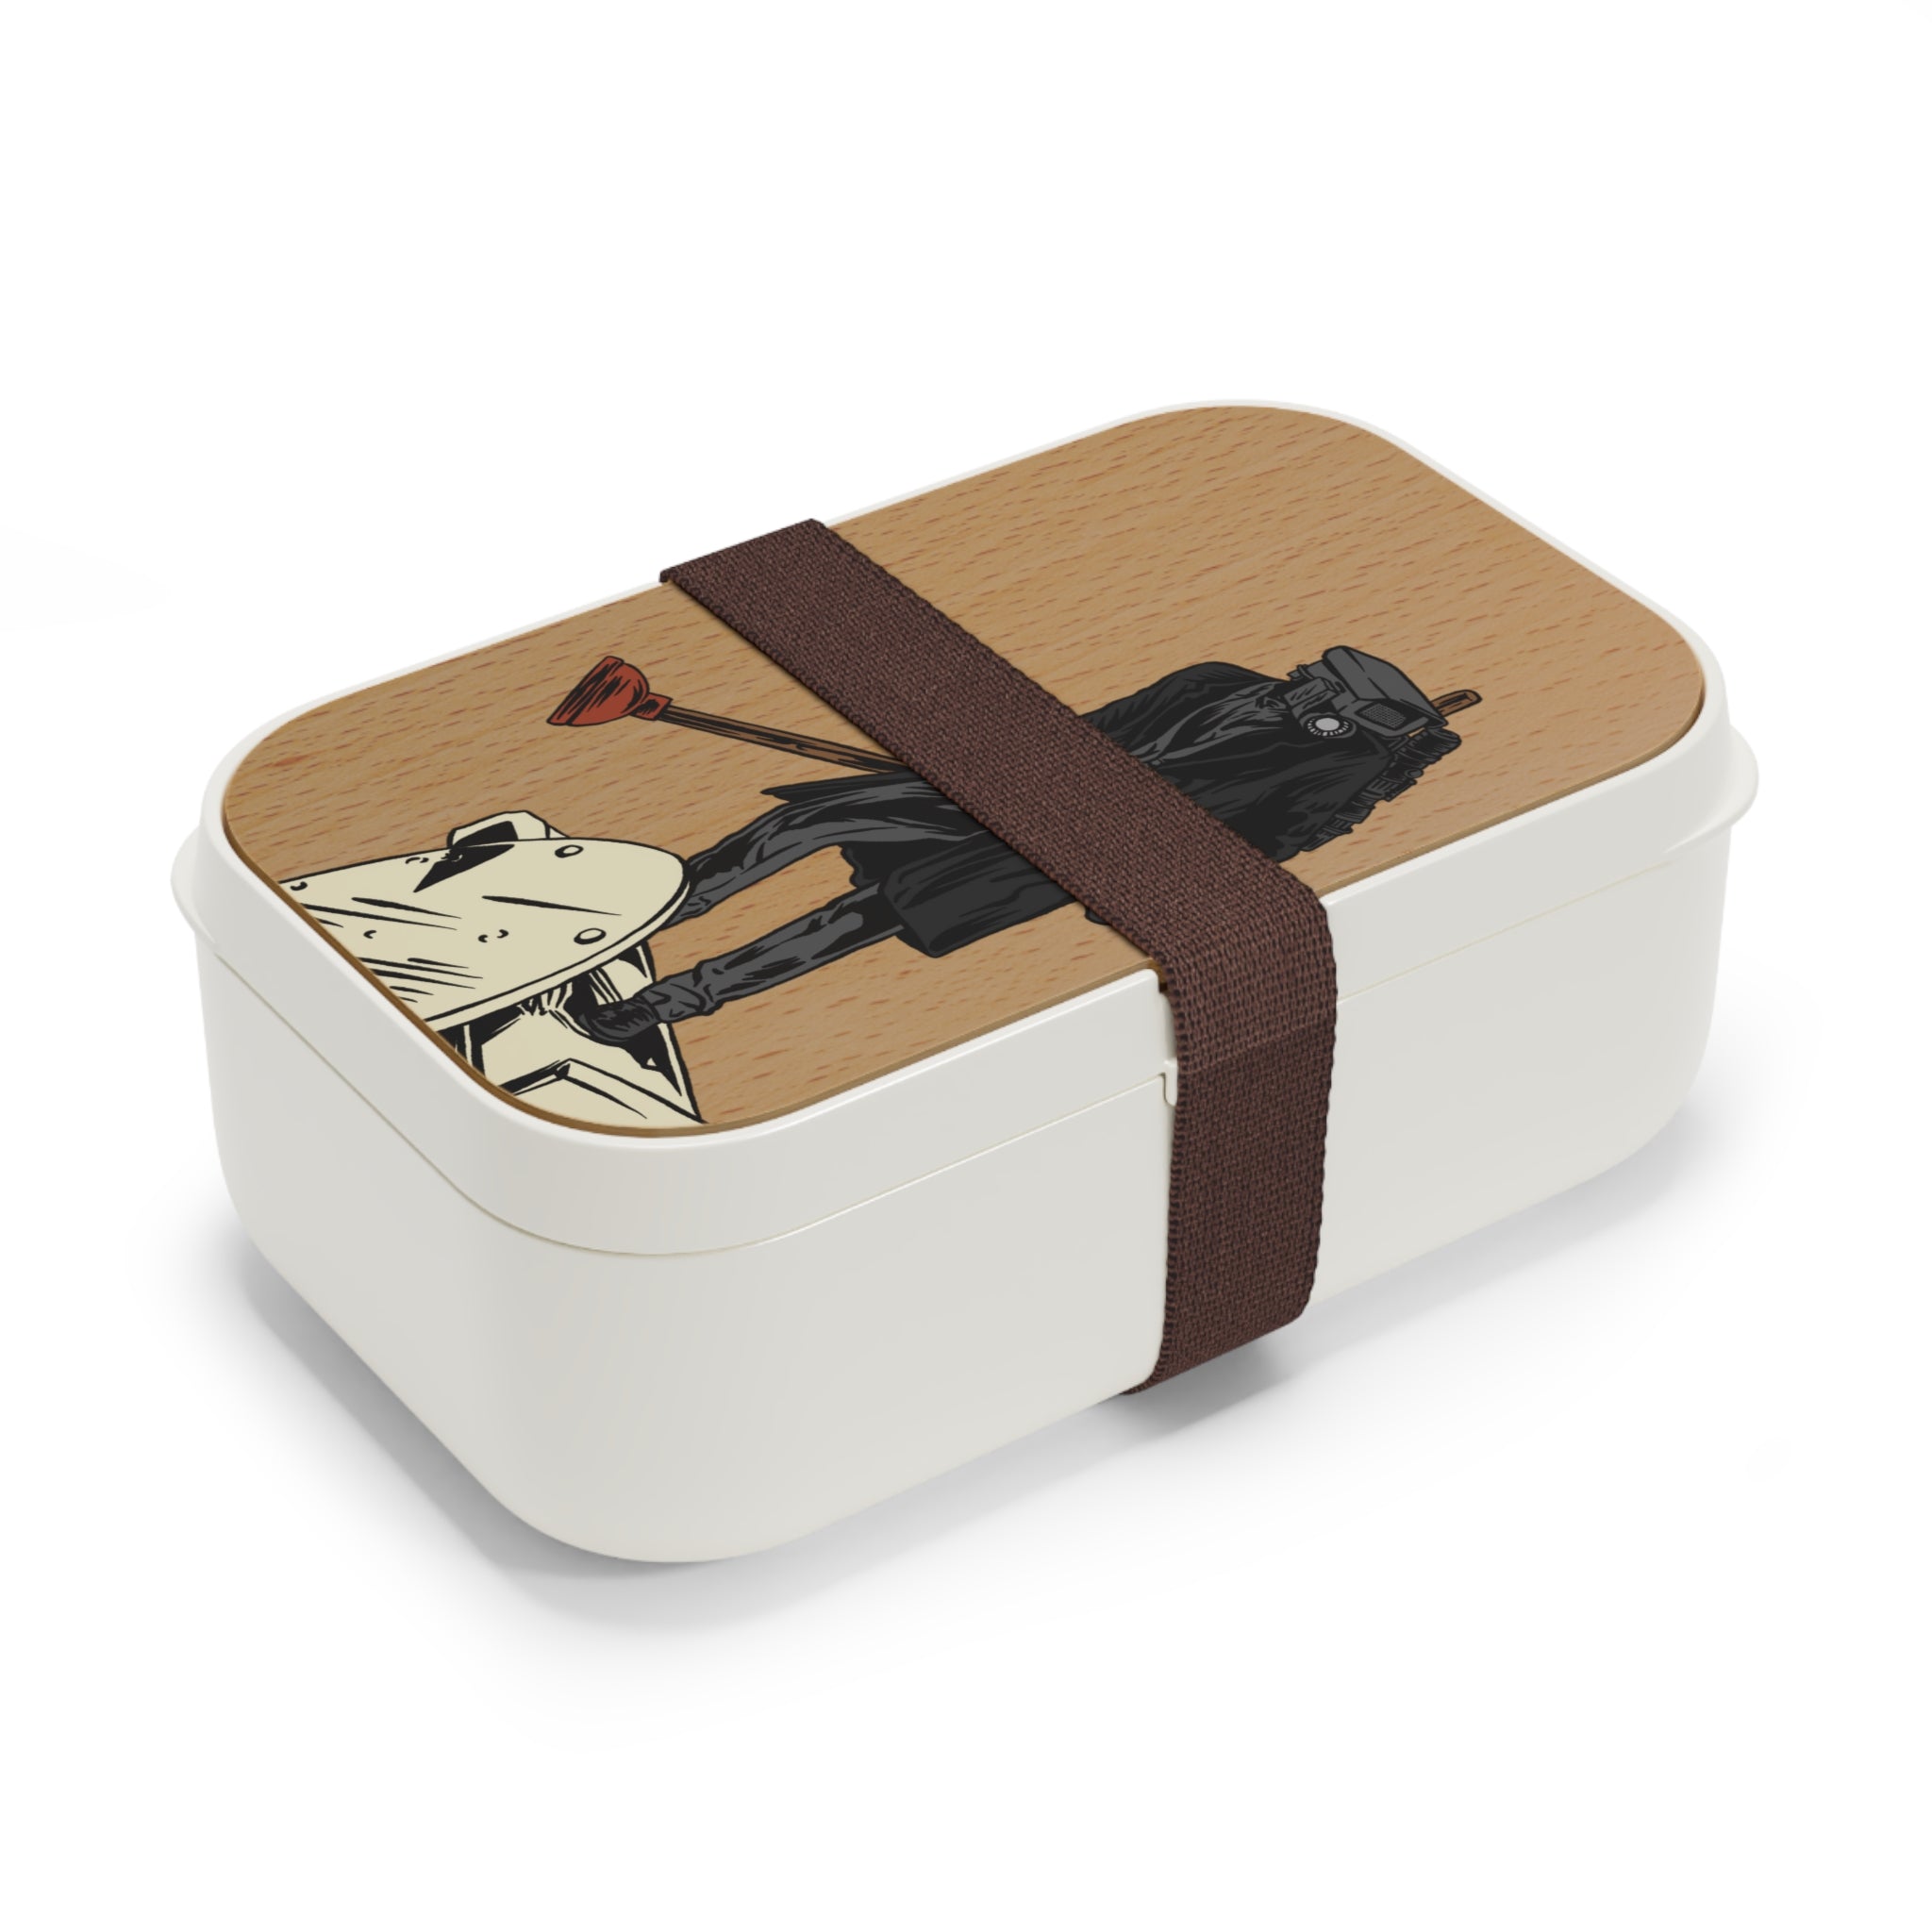 Plungerman - Sole Plunger Bento Lunch Box